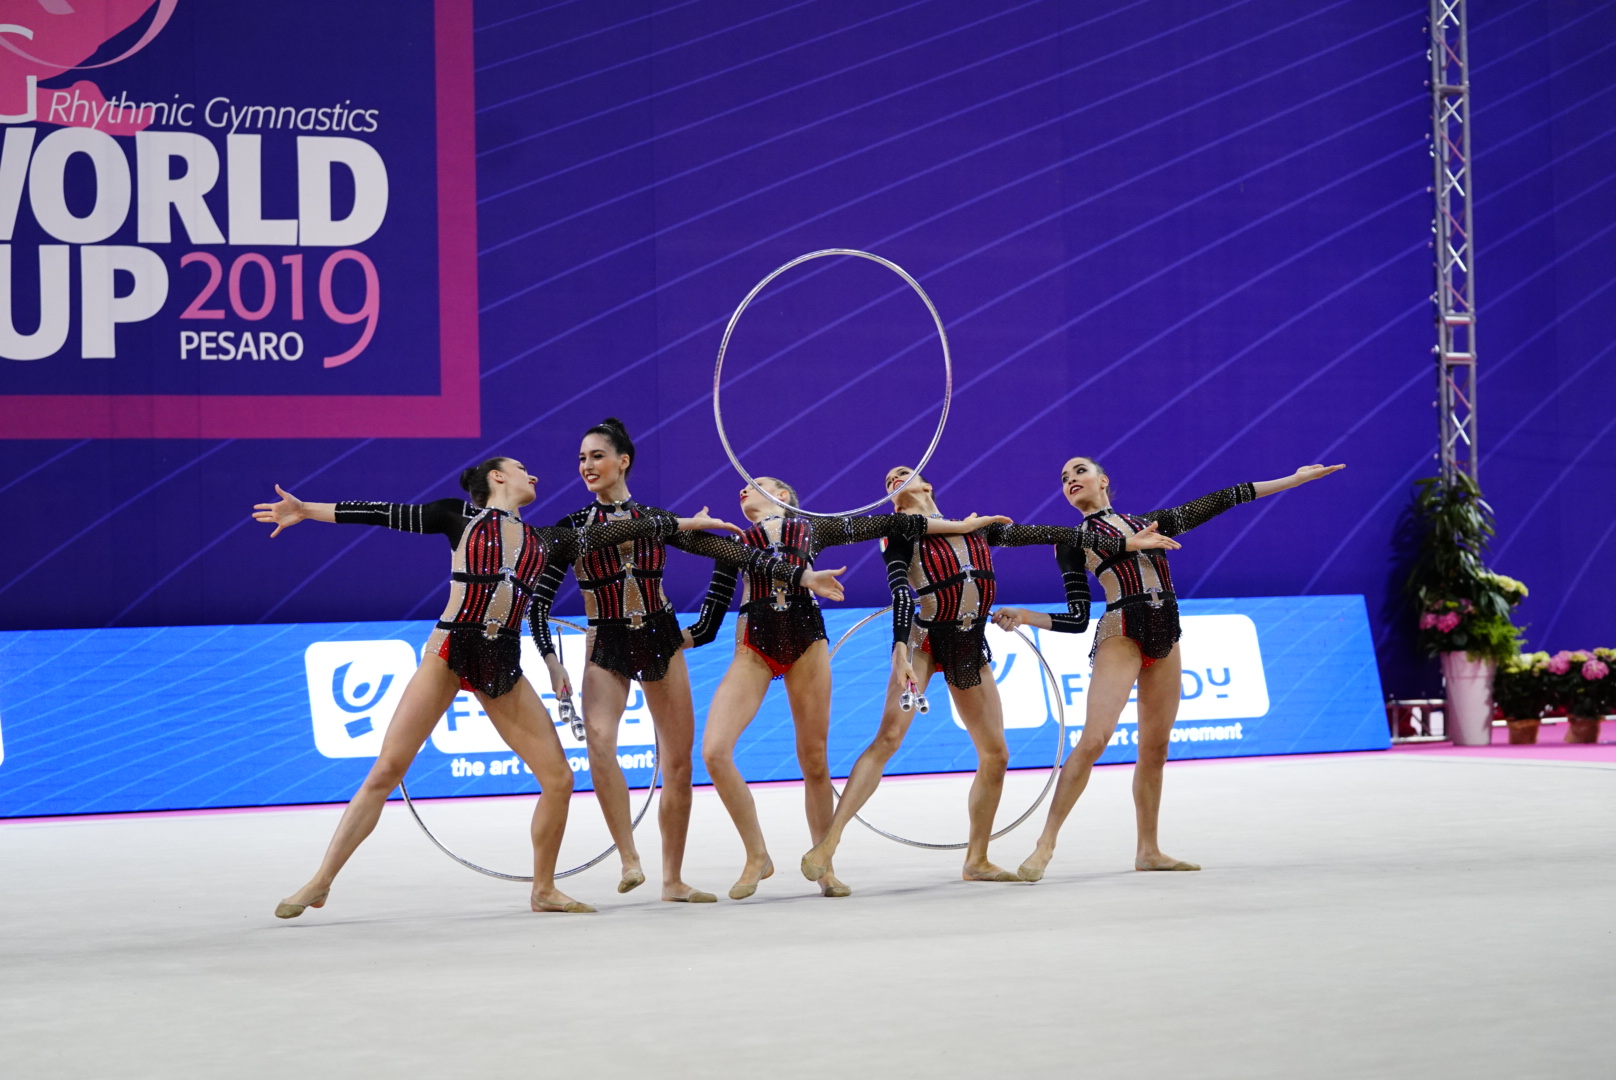 Ginnastica ritmica, Coppa del Mondo: le Farfalle della ginnastica ritmica (in foto) conquistano l'argento nell'all-round e il quarto posto nella classifica generale dell'evento.